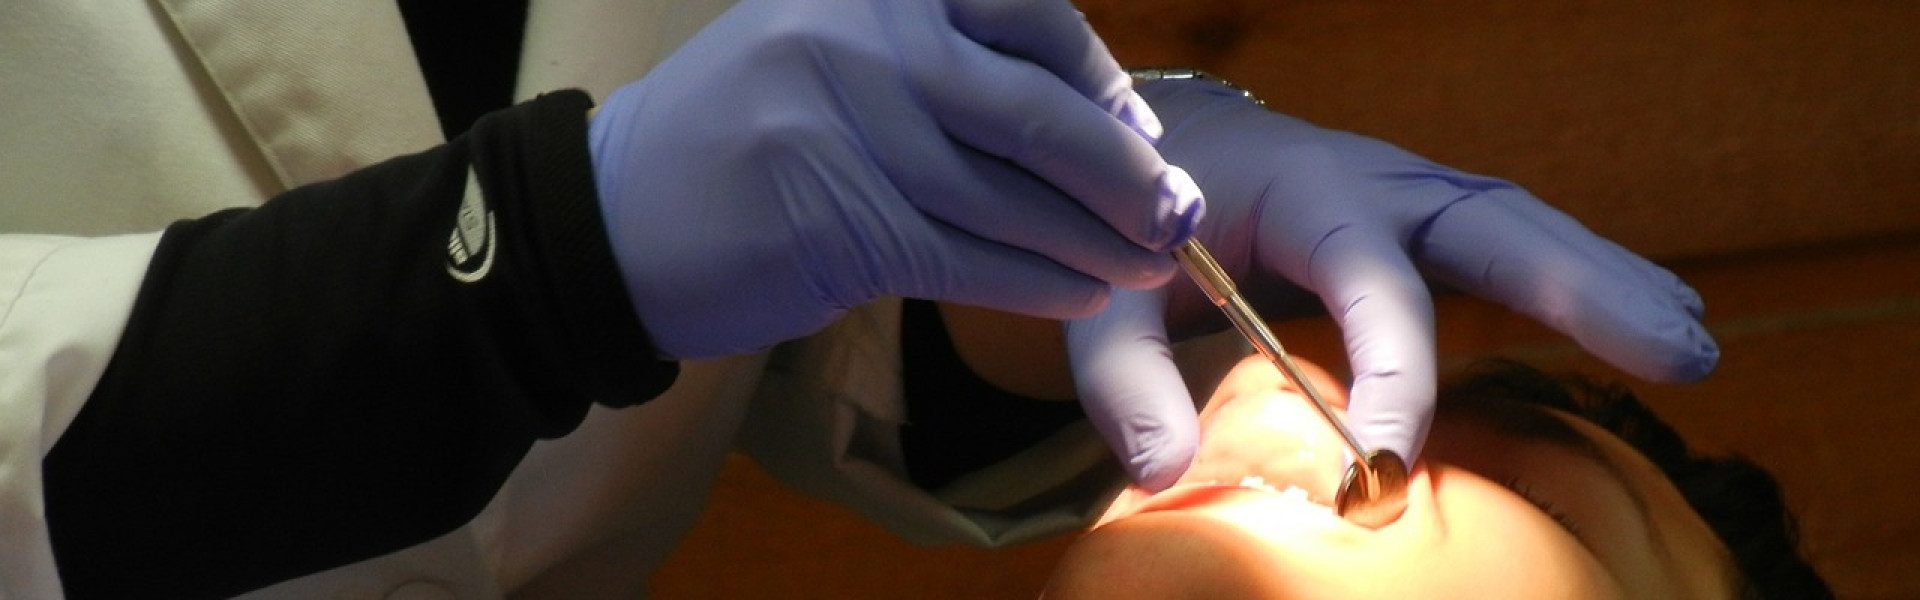 Suivre une formation pour devenir orthodontiste